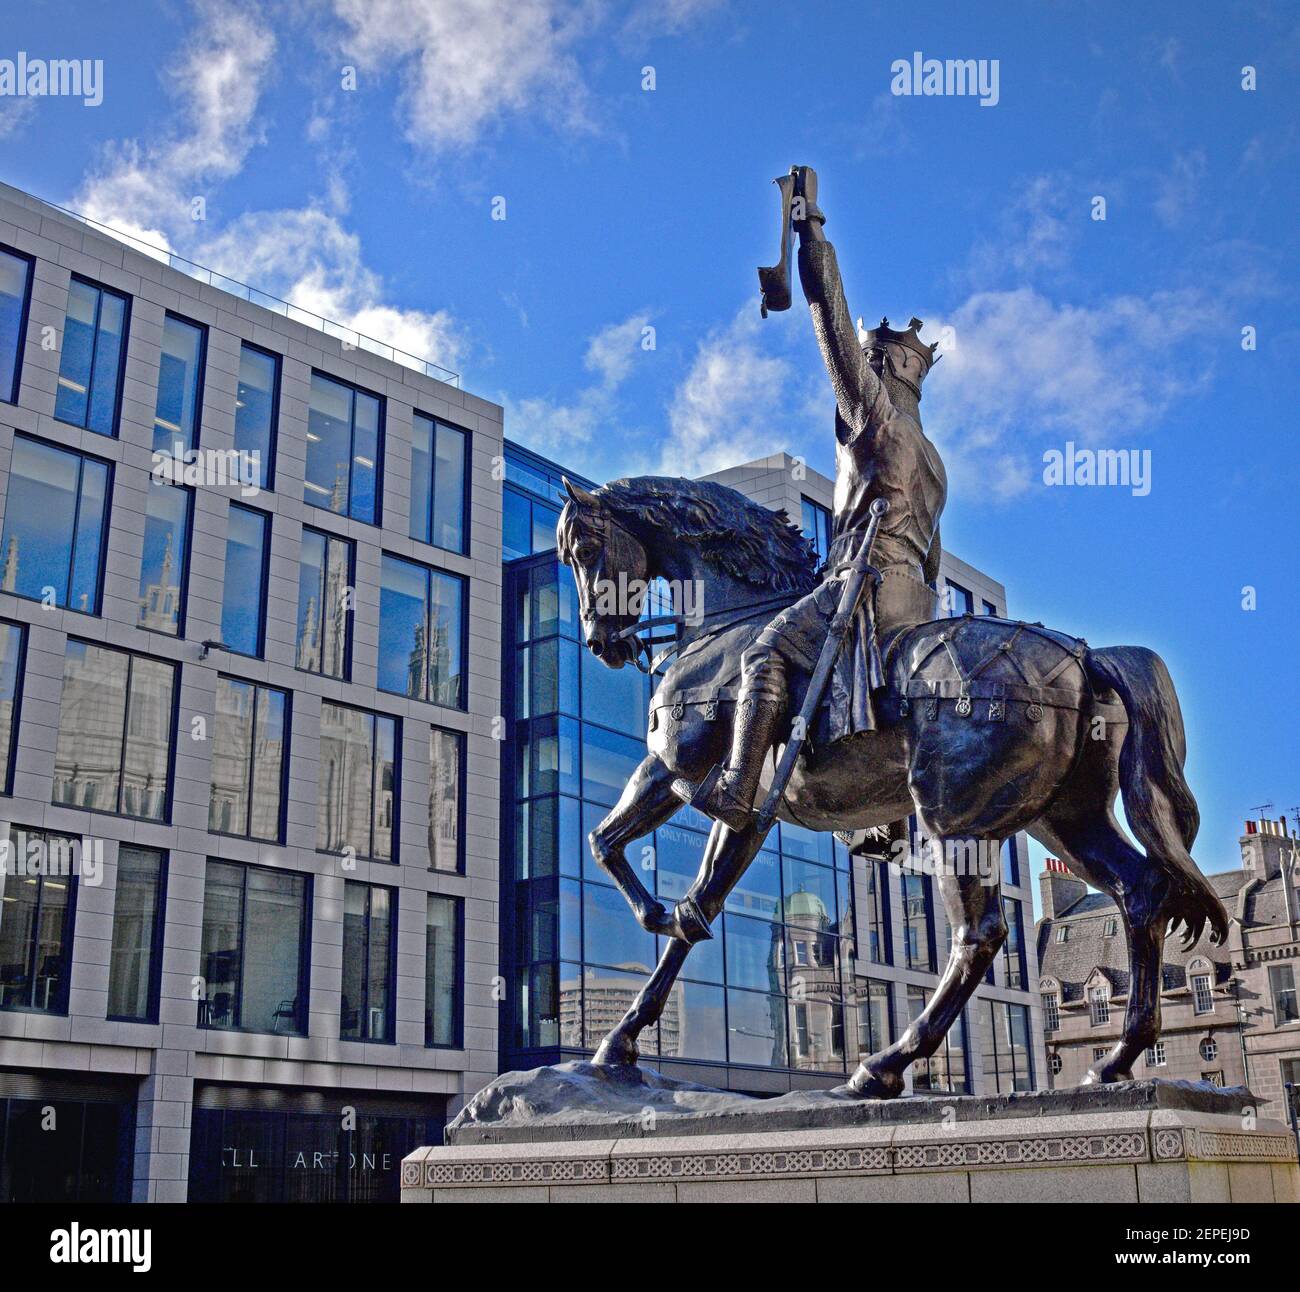 Robert la statua di Bruce in Marischal Square aberdeen Foto Stock